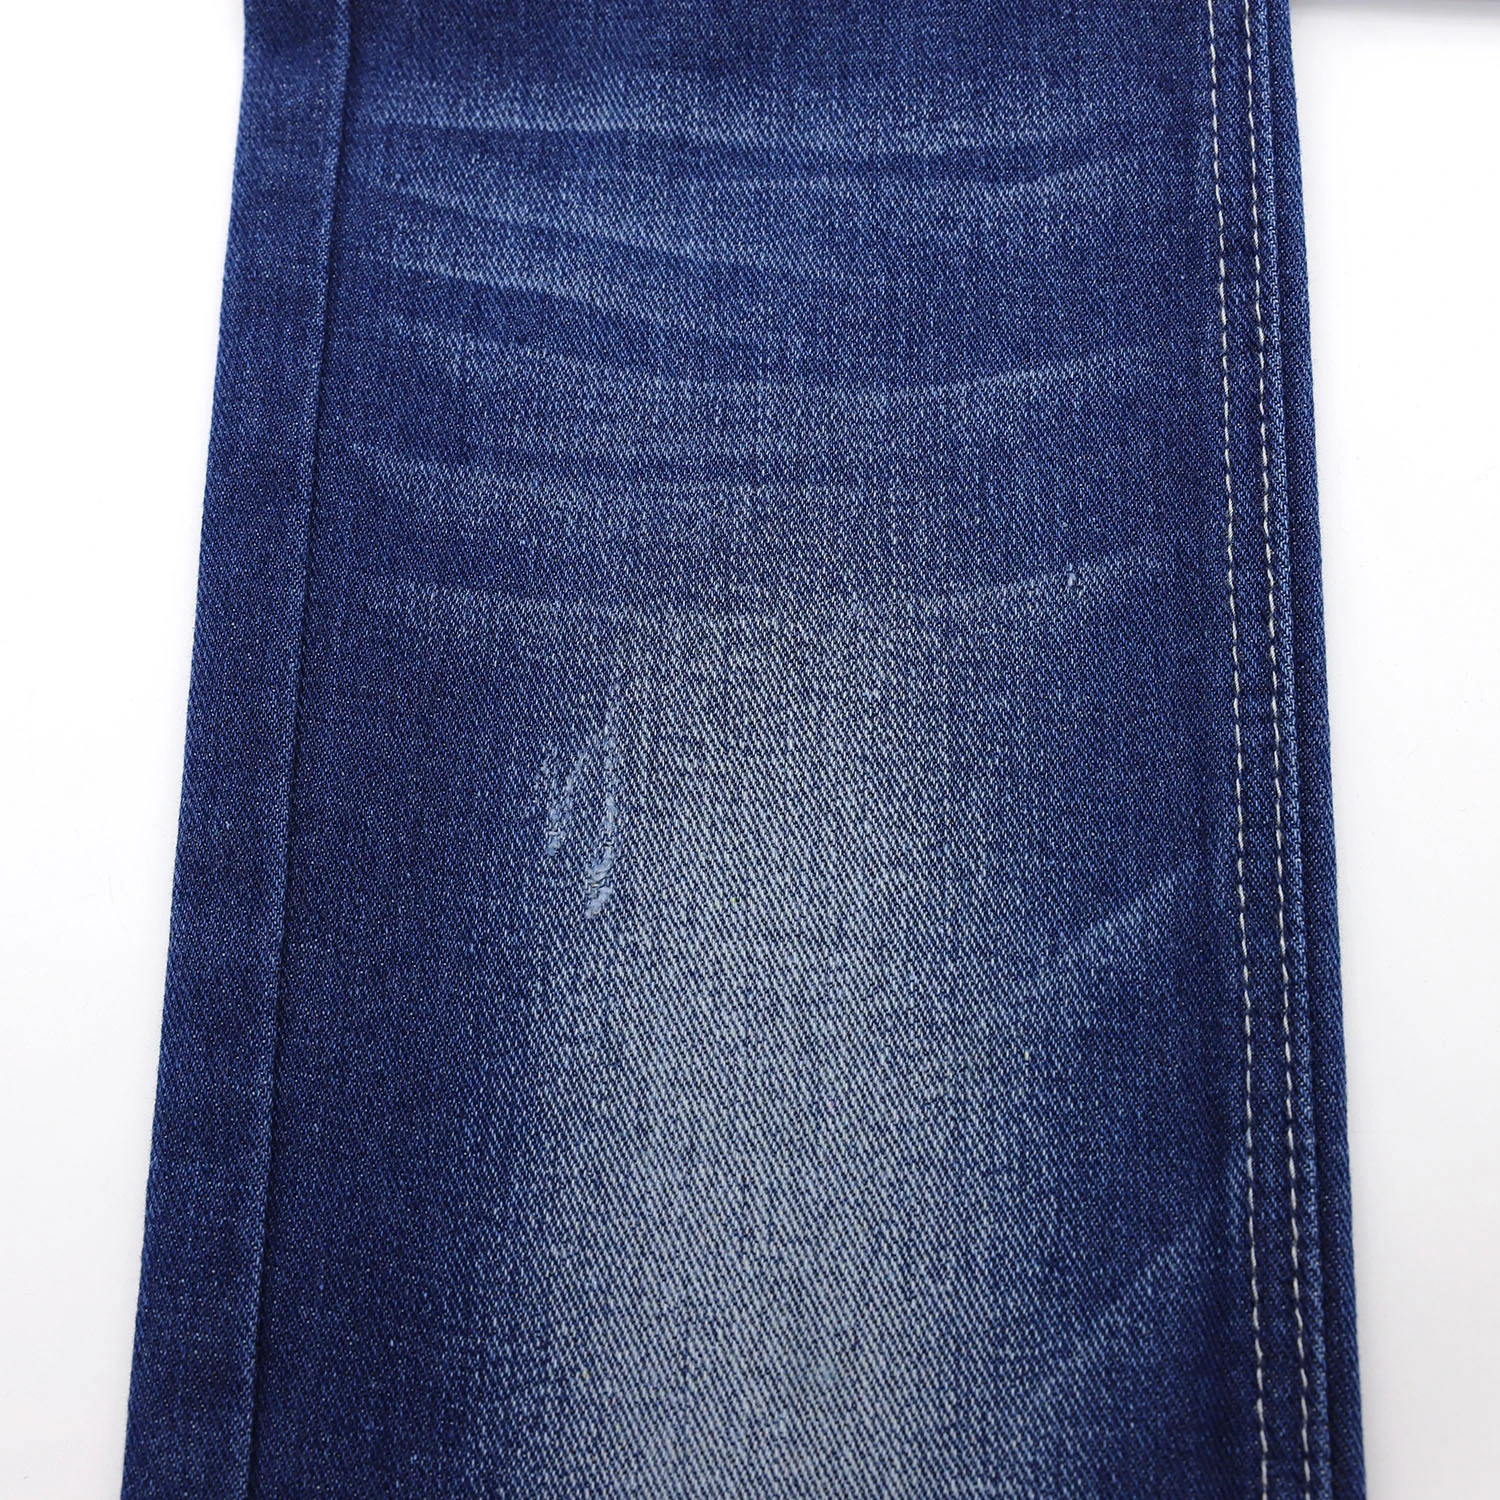 602A-18 9.67OZ OE Yarn Indigo Color Cheap Denim Fabric Supplier 6